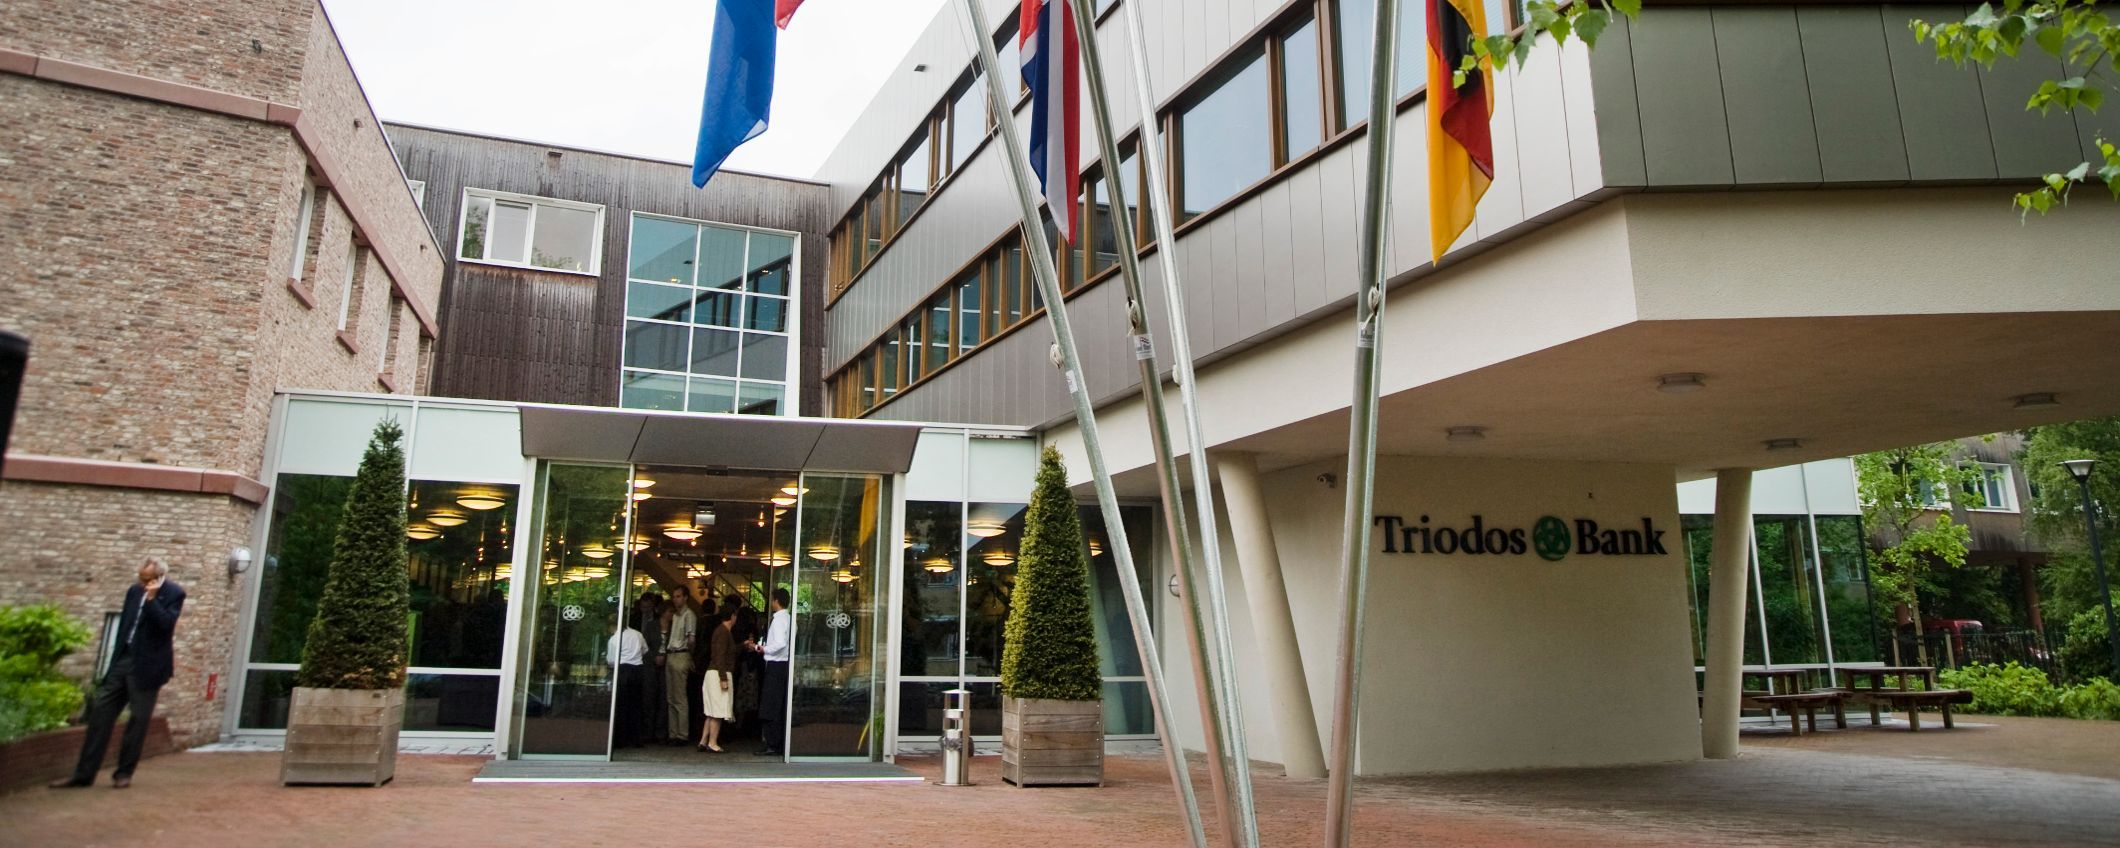 Het hoofdkantoor van Triodos Bank in Zeist